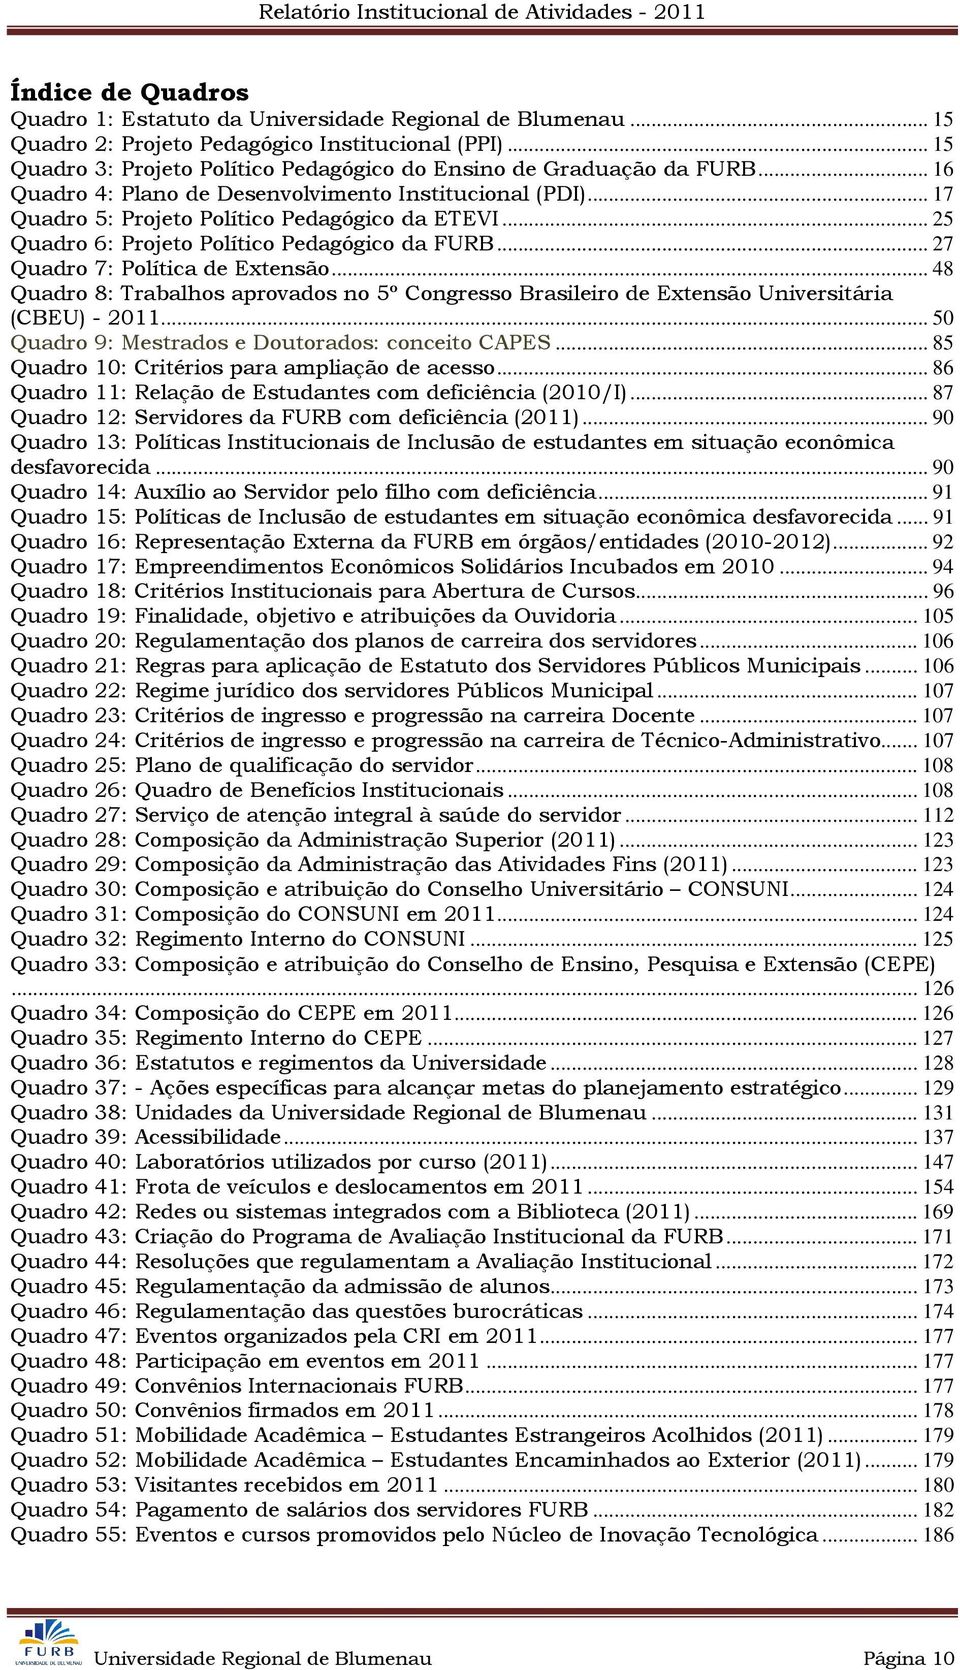 .. 25 Quadro 6: Projeto Político Pedagógico da FURB... 27 Quadro 7: Política de Extensão... 48 Quadro 8: Trabalhos aprovados no 5º Congresso Brasileiro de Extensão Universitária (CBEU) - 2011.